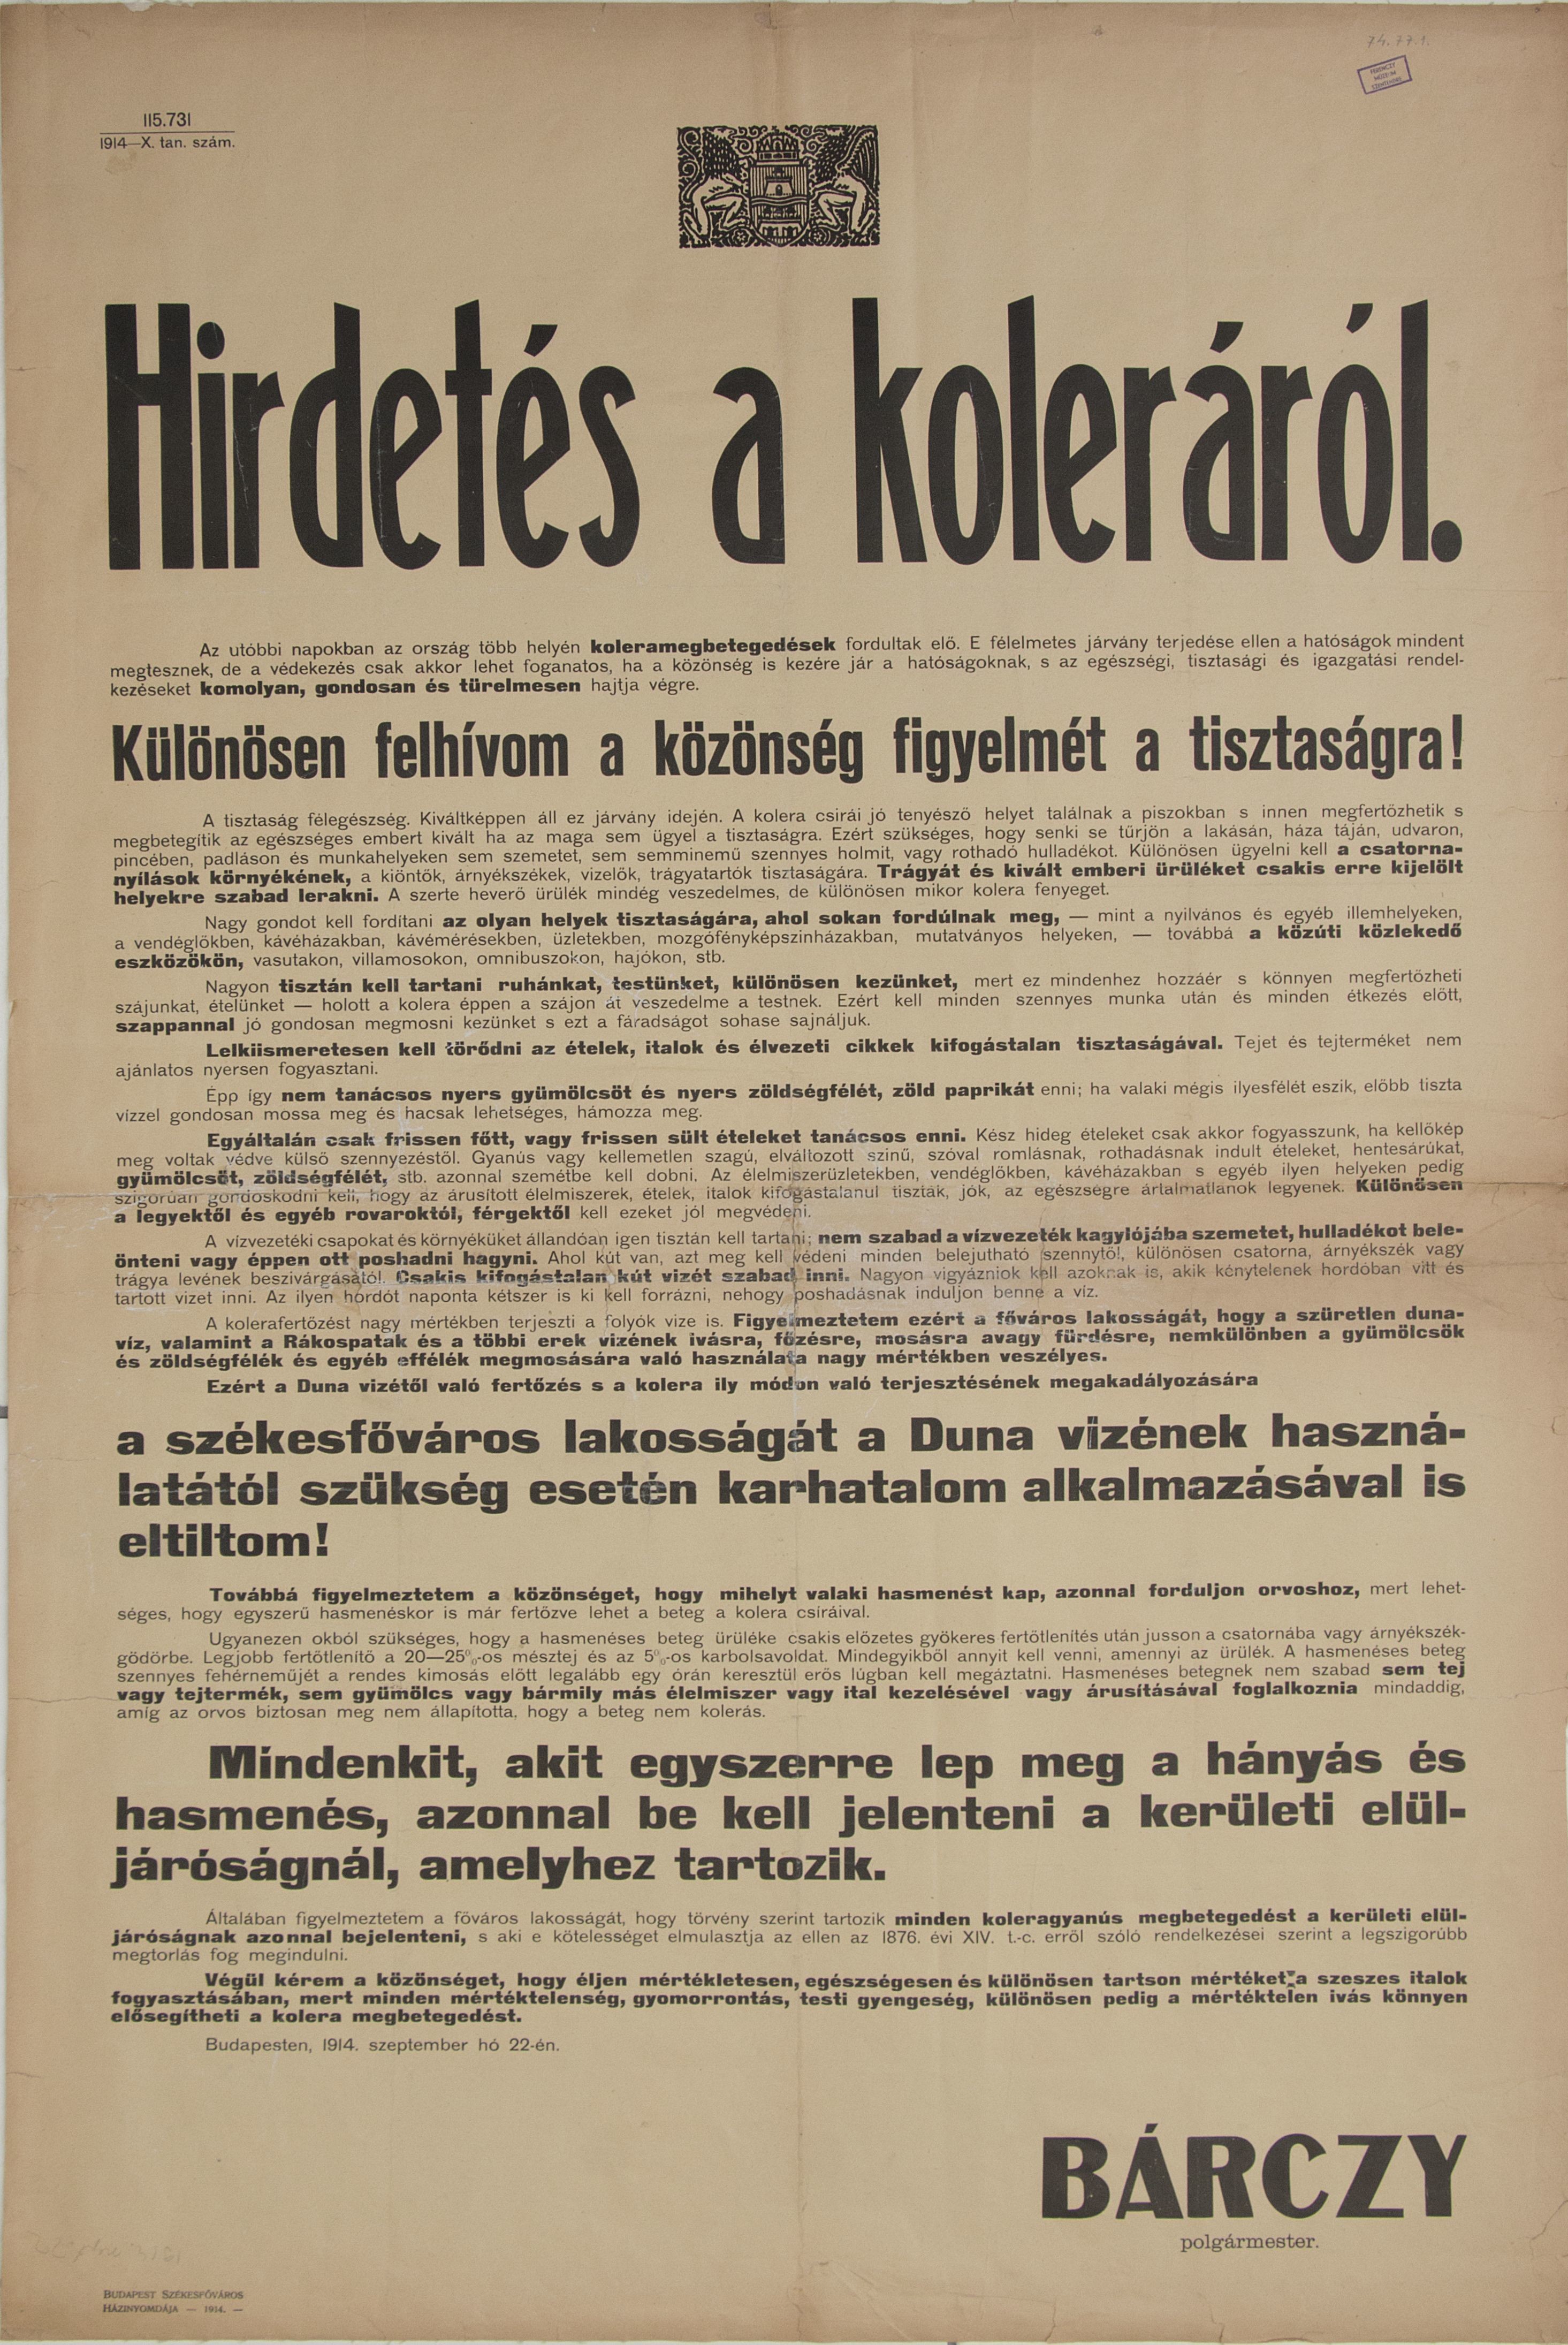 Hirdetés a koleráról, 1914.09.22. (Ferenczy Múzeumi Centrum CC BY-NC-SA)